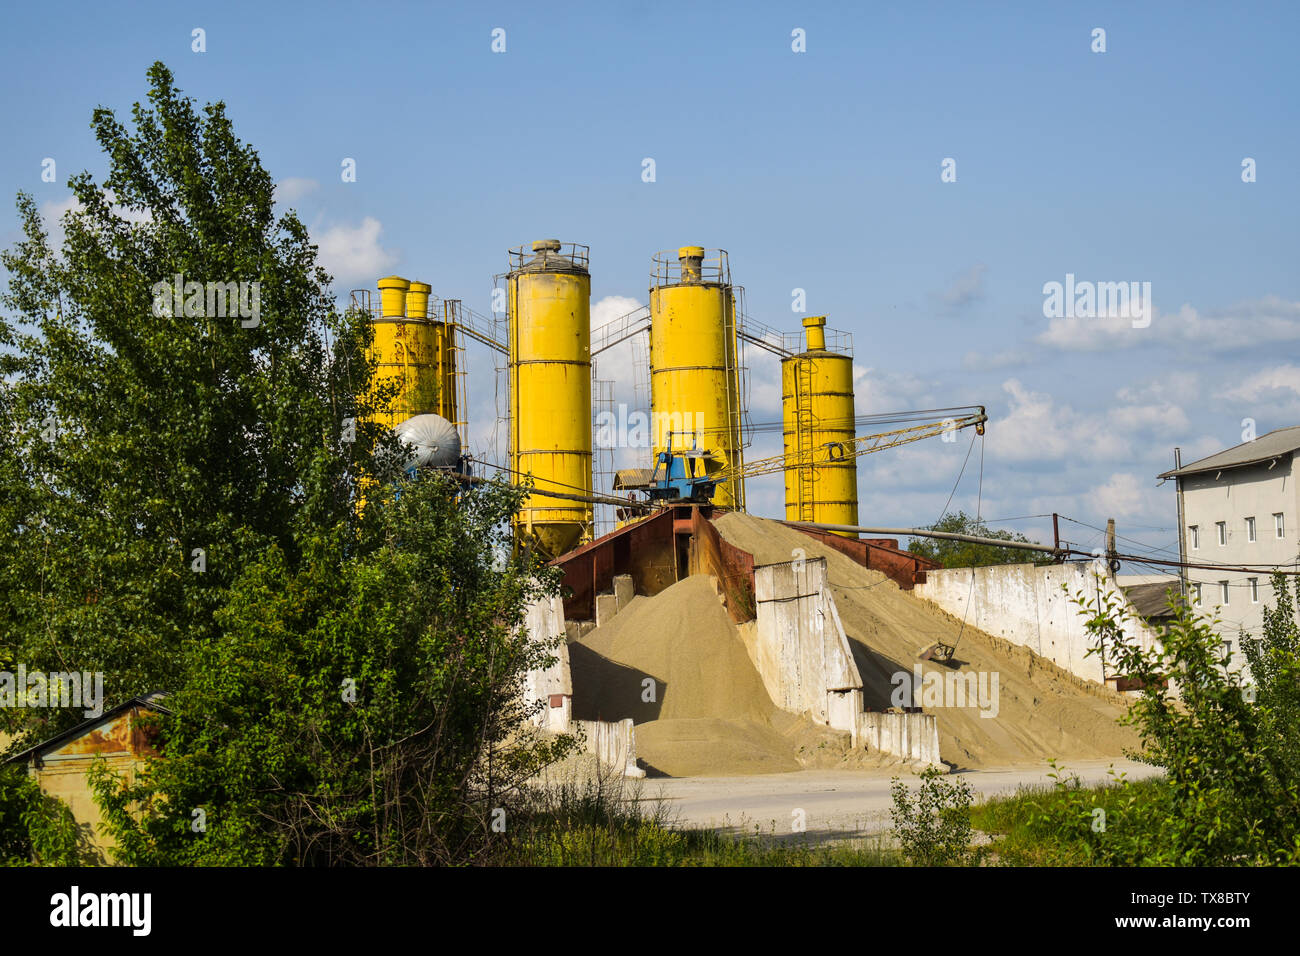 Industrielle Foto mit Haufen von Kies und Sand in der Zementfabrik mit drei grossen gelben Silo. Beton Grube für Ballast in der Zementfabrik. Stockfoto